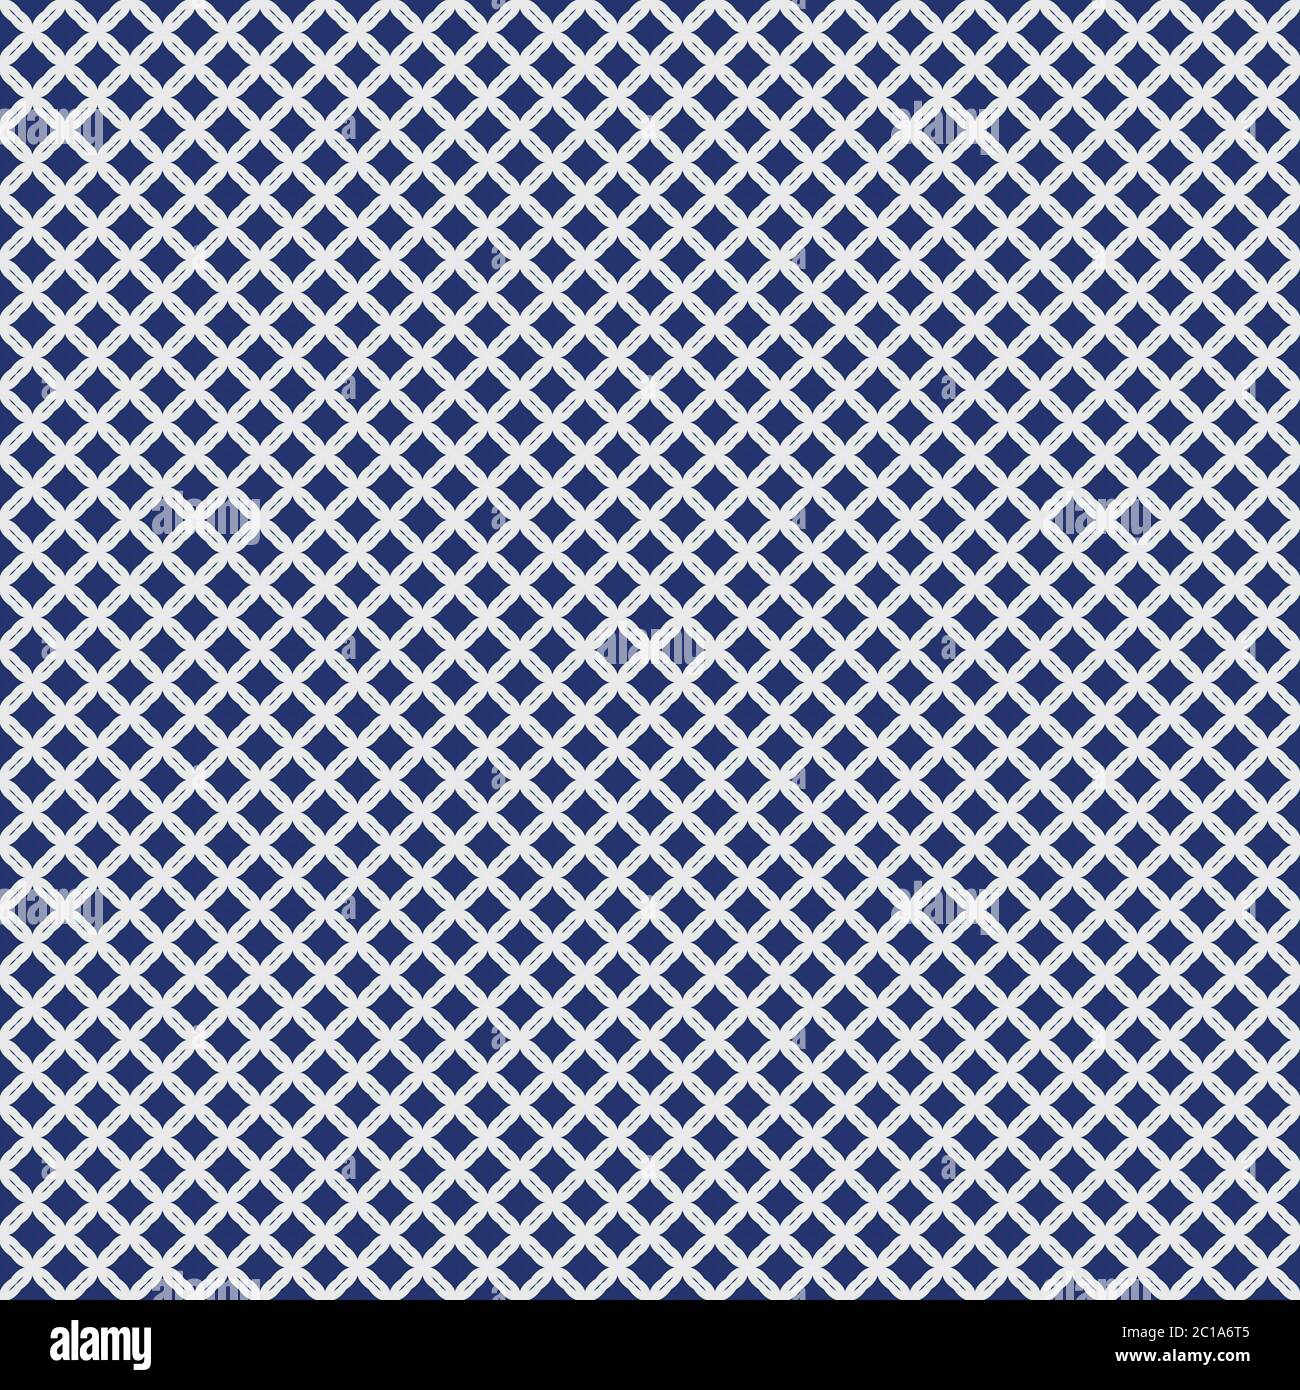 Fabric Seamless Pattern Stock Photo